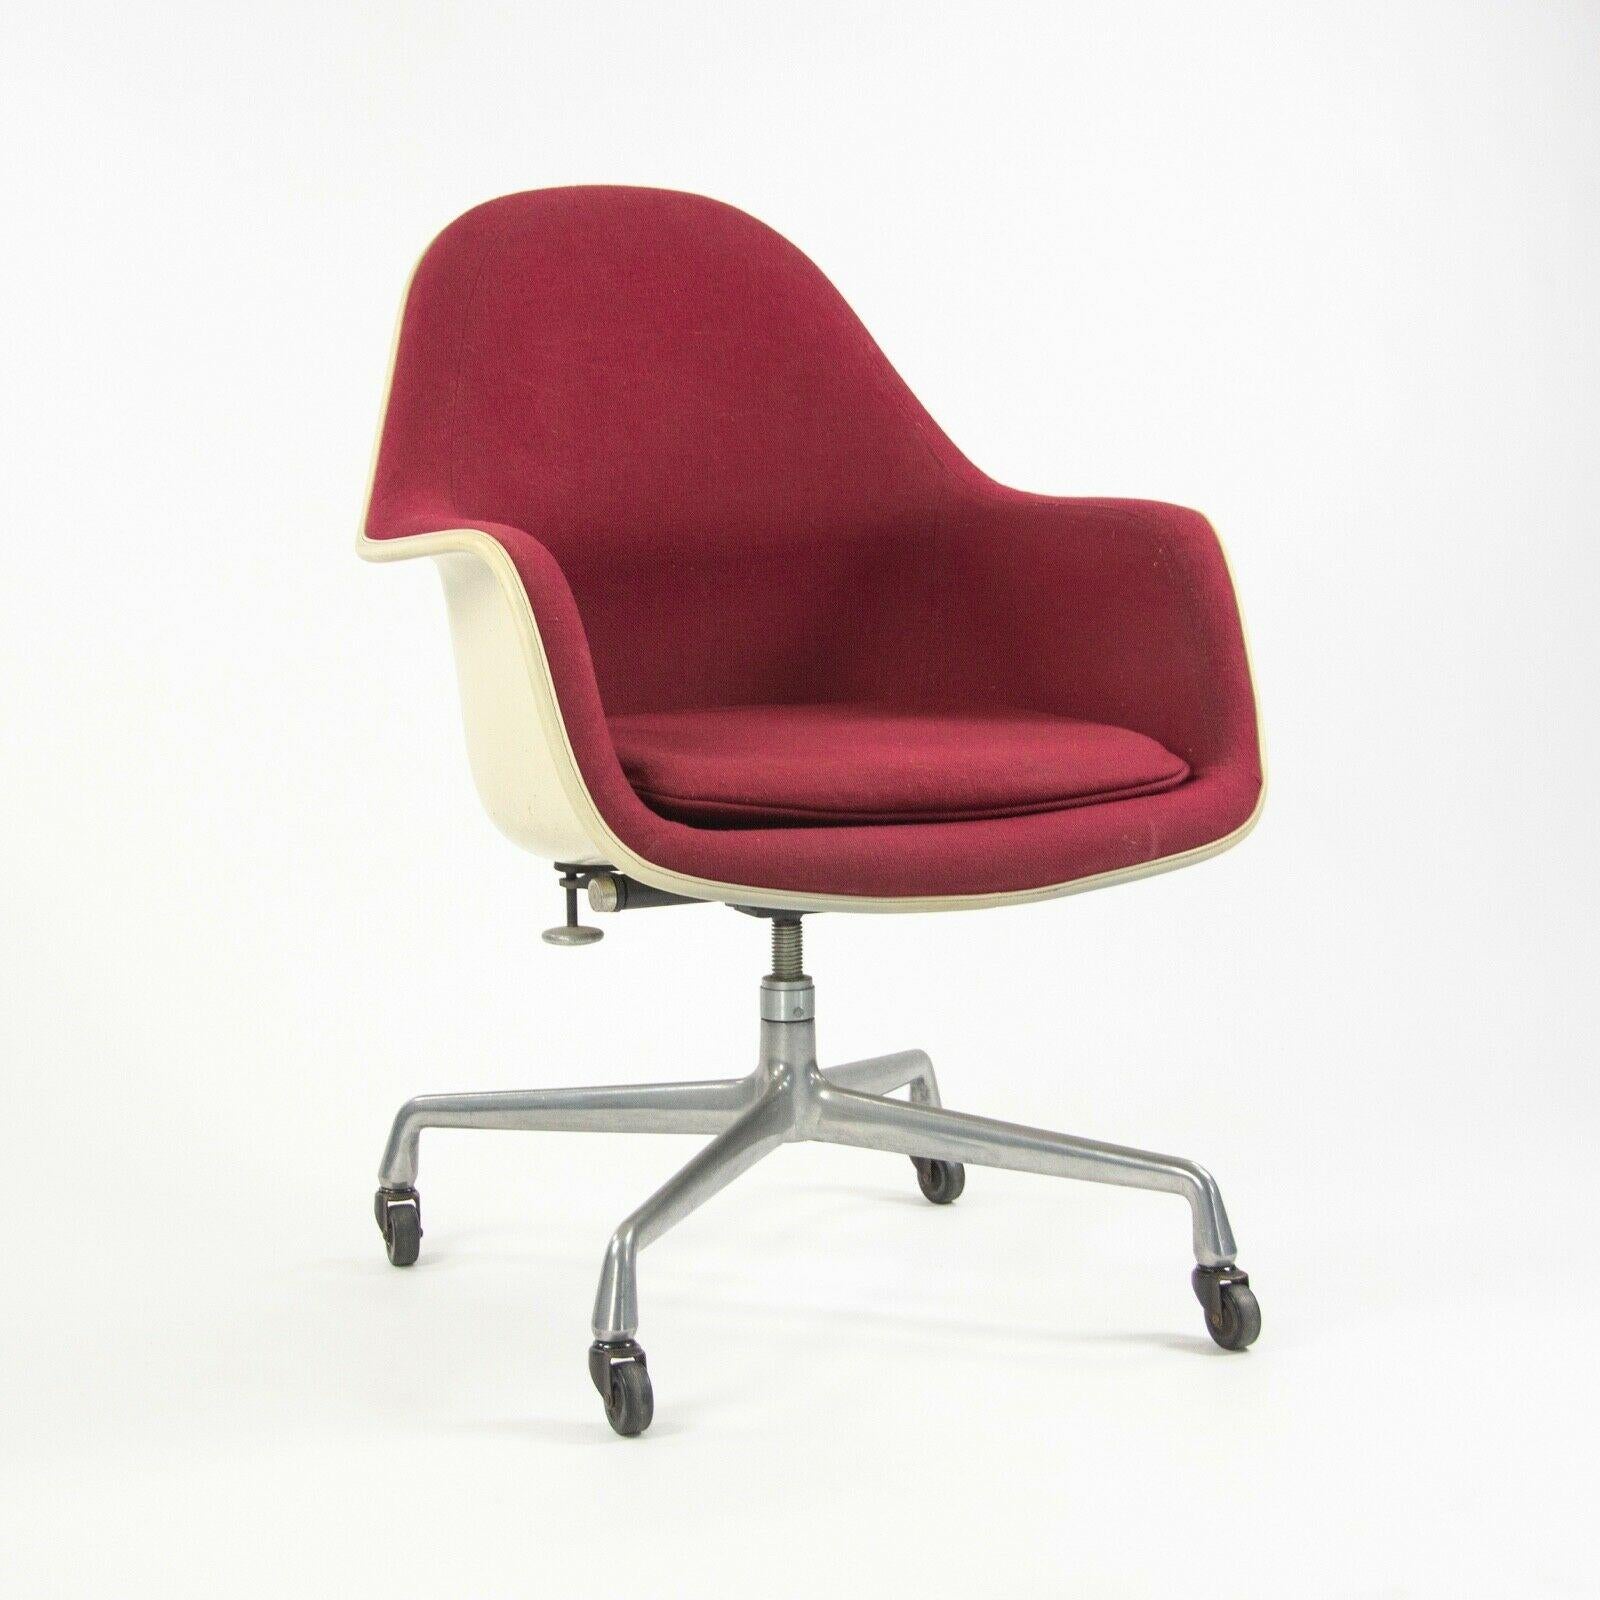 
La vente porte sur une rare et merveilleuse chaise EC175-8, conçue par Charles et Ray Eames et produite par Herman Miller. Il s'agit de l'une des conceptions les plus uniques et les plus tardives des Eames, qui s'appuie sur les innovations des